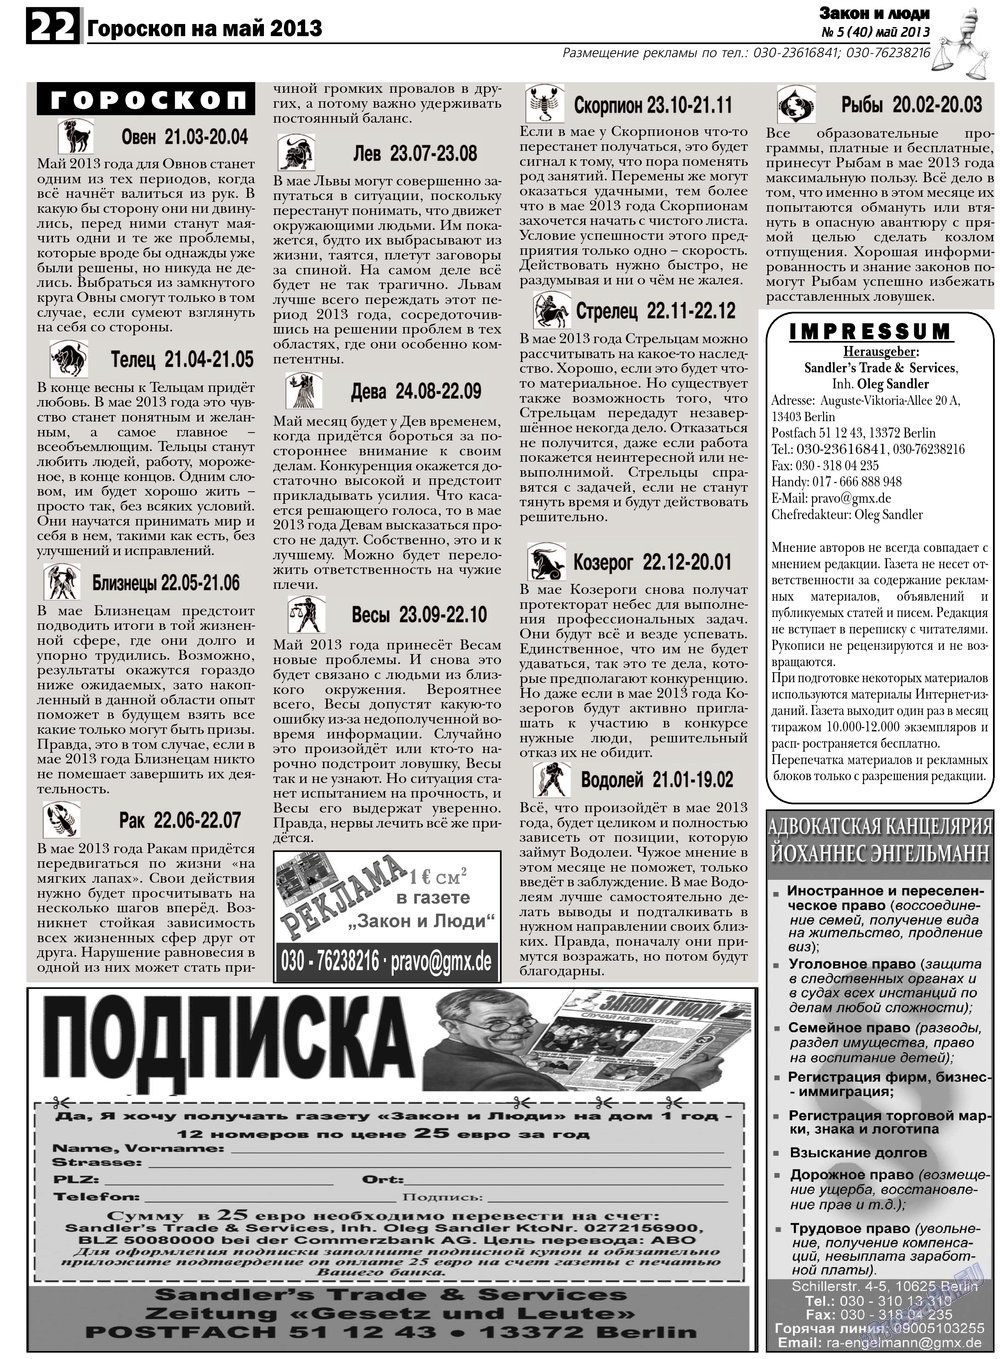 Закон и люди (газета). 2013 год, номер 5, стр. 22